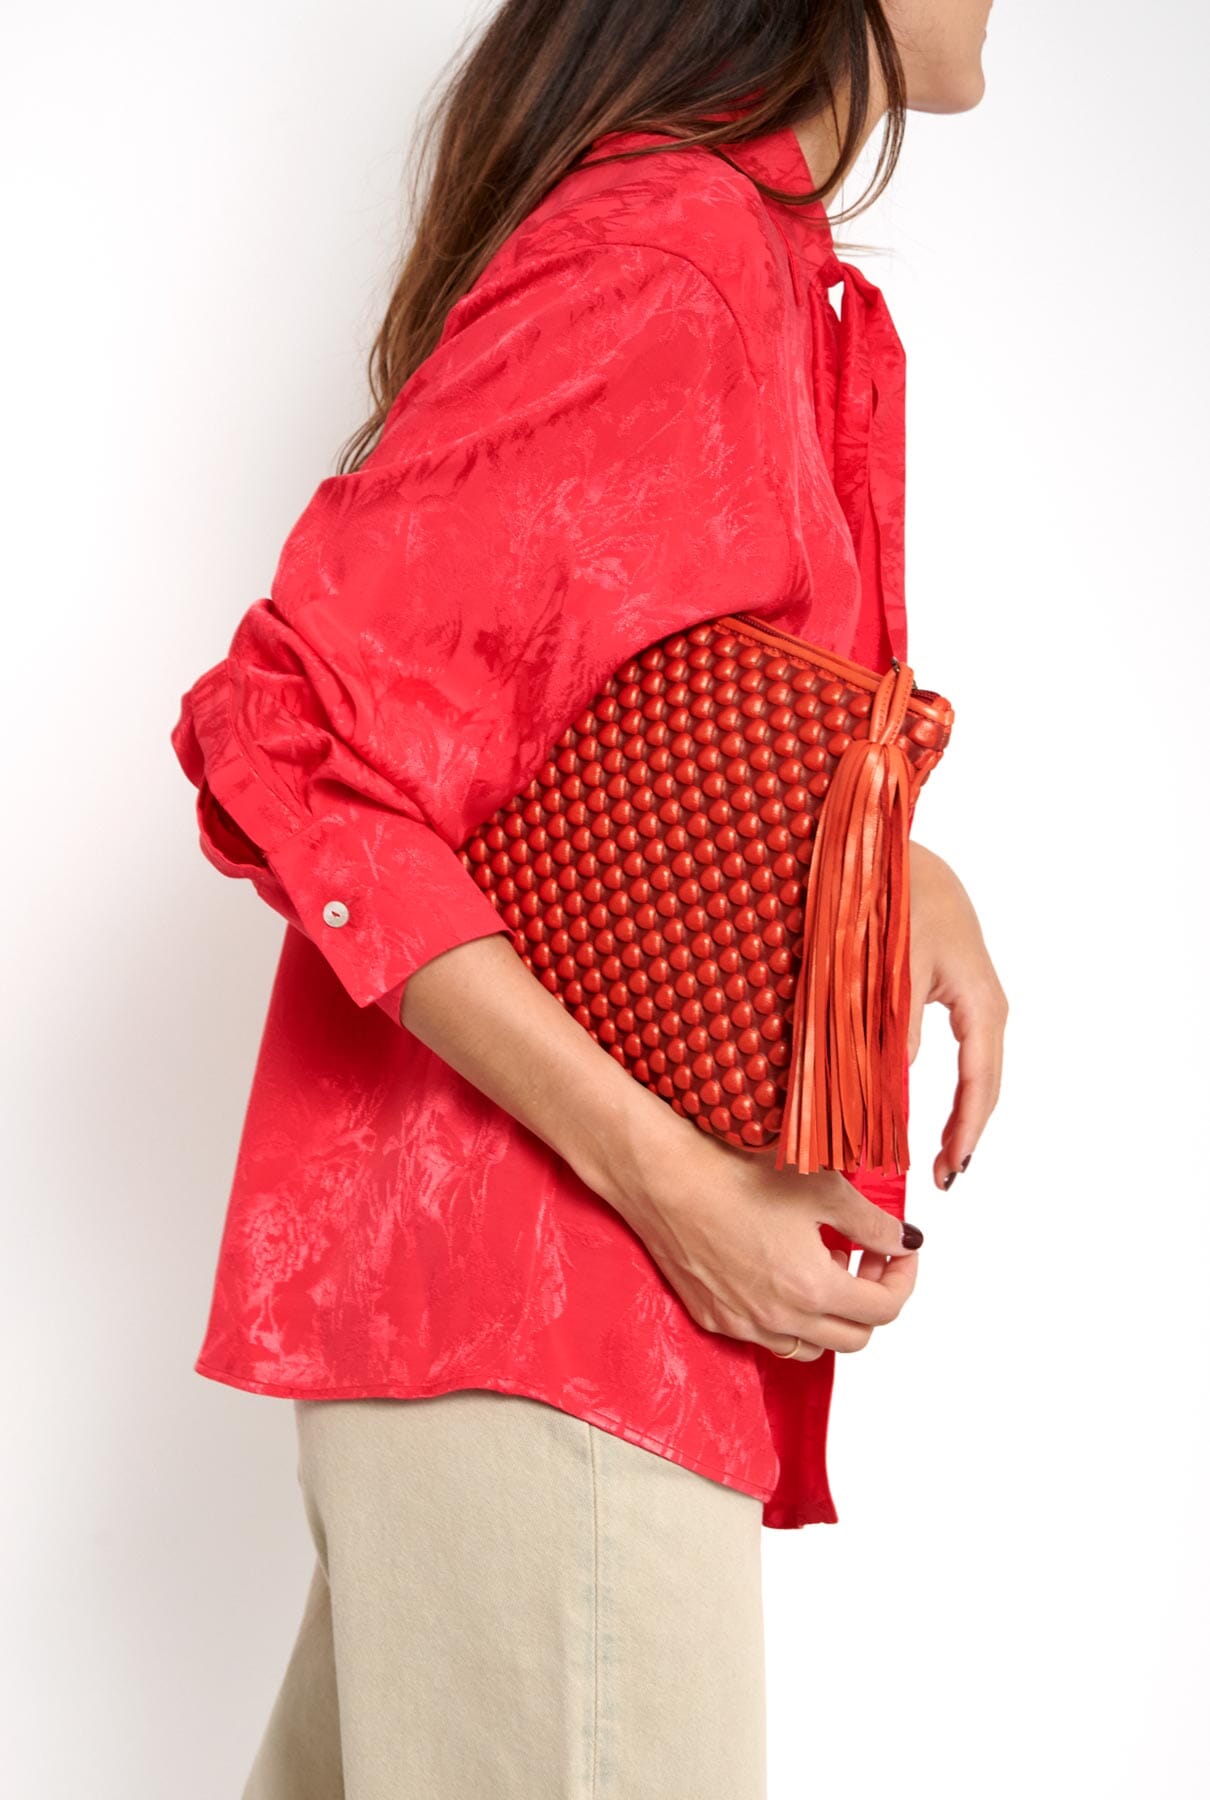 Pochette X-Large Red Hand bags Tissa Fontaneda 